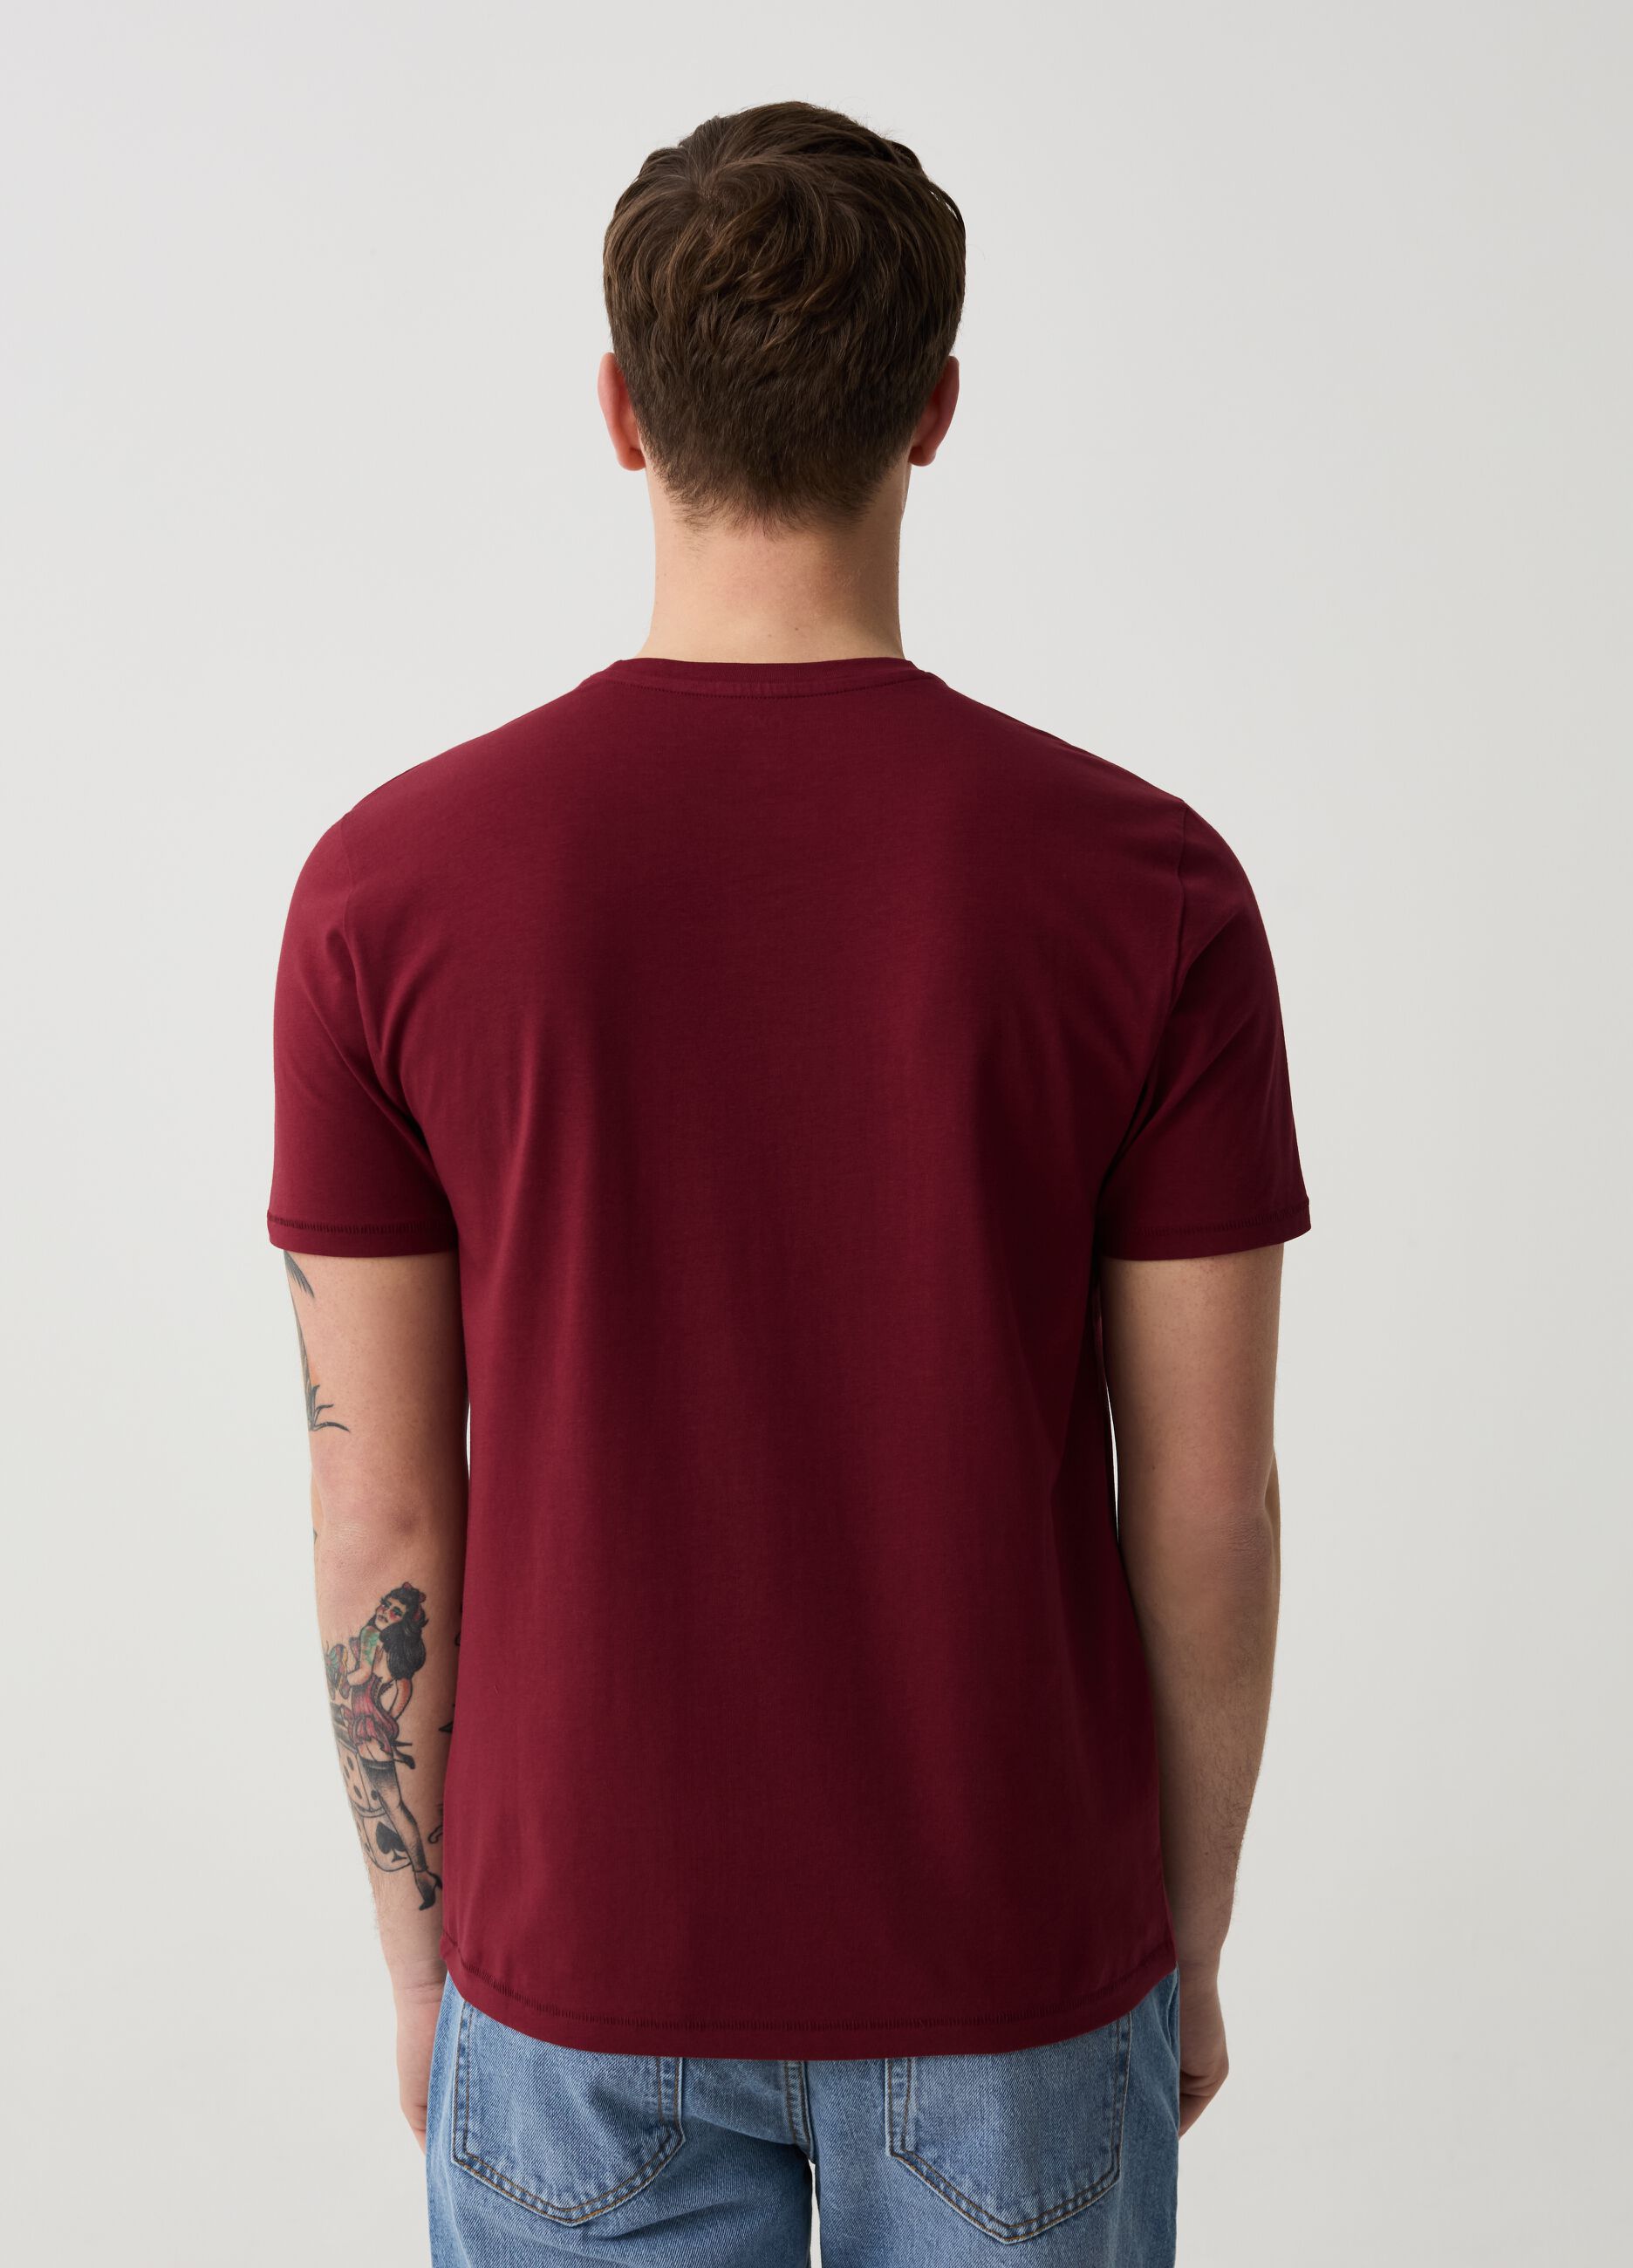 T-shirt slim fit in cotone bio stretch